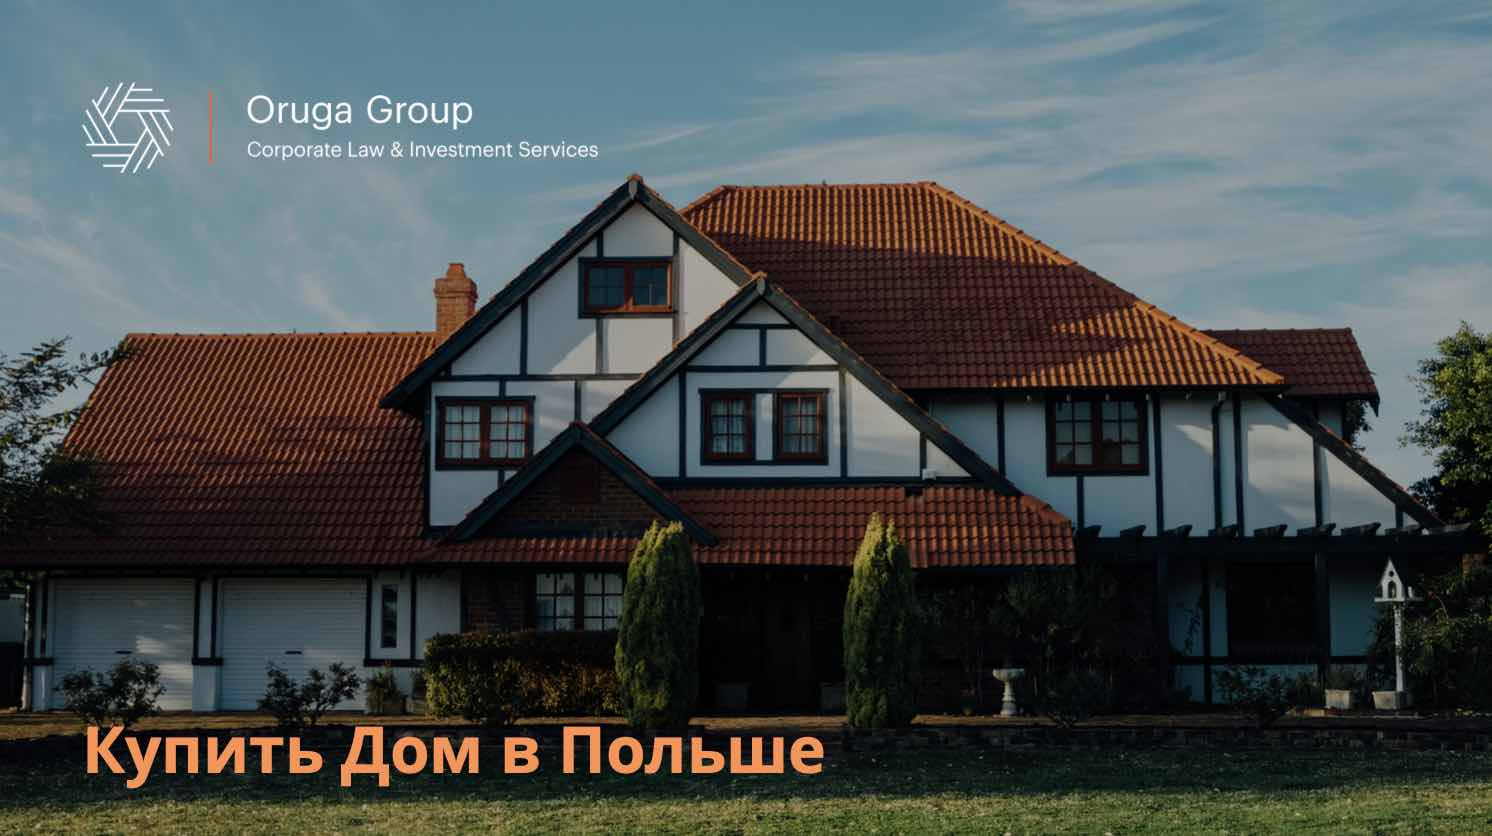 Дом в польше купить недорого сайт по продаже недвижимости украина